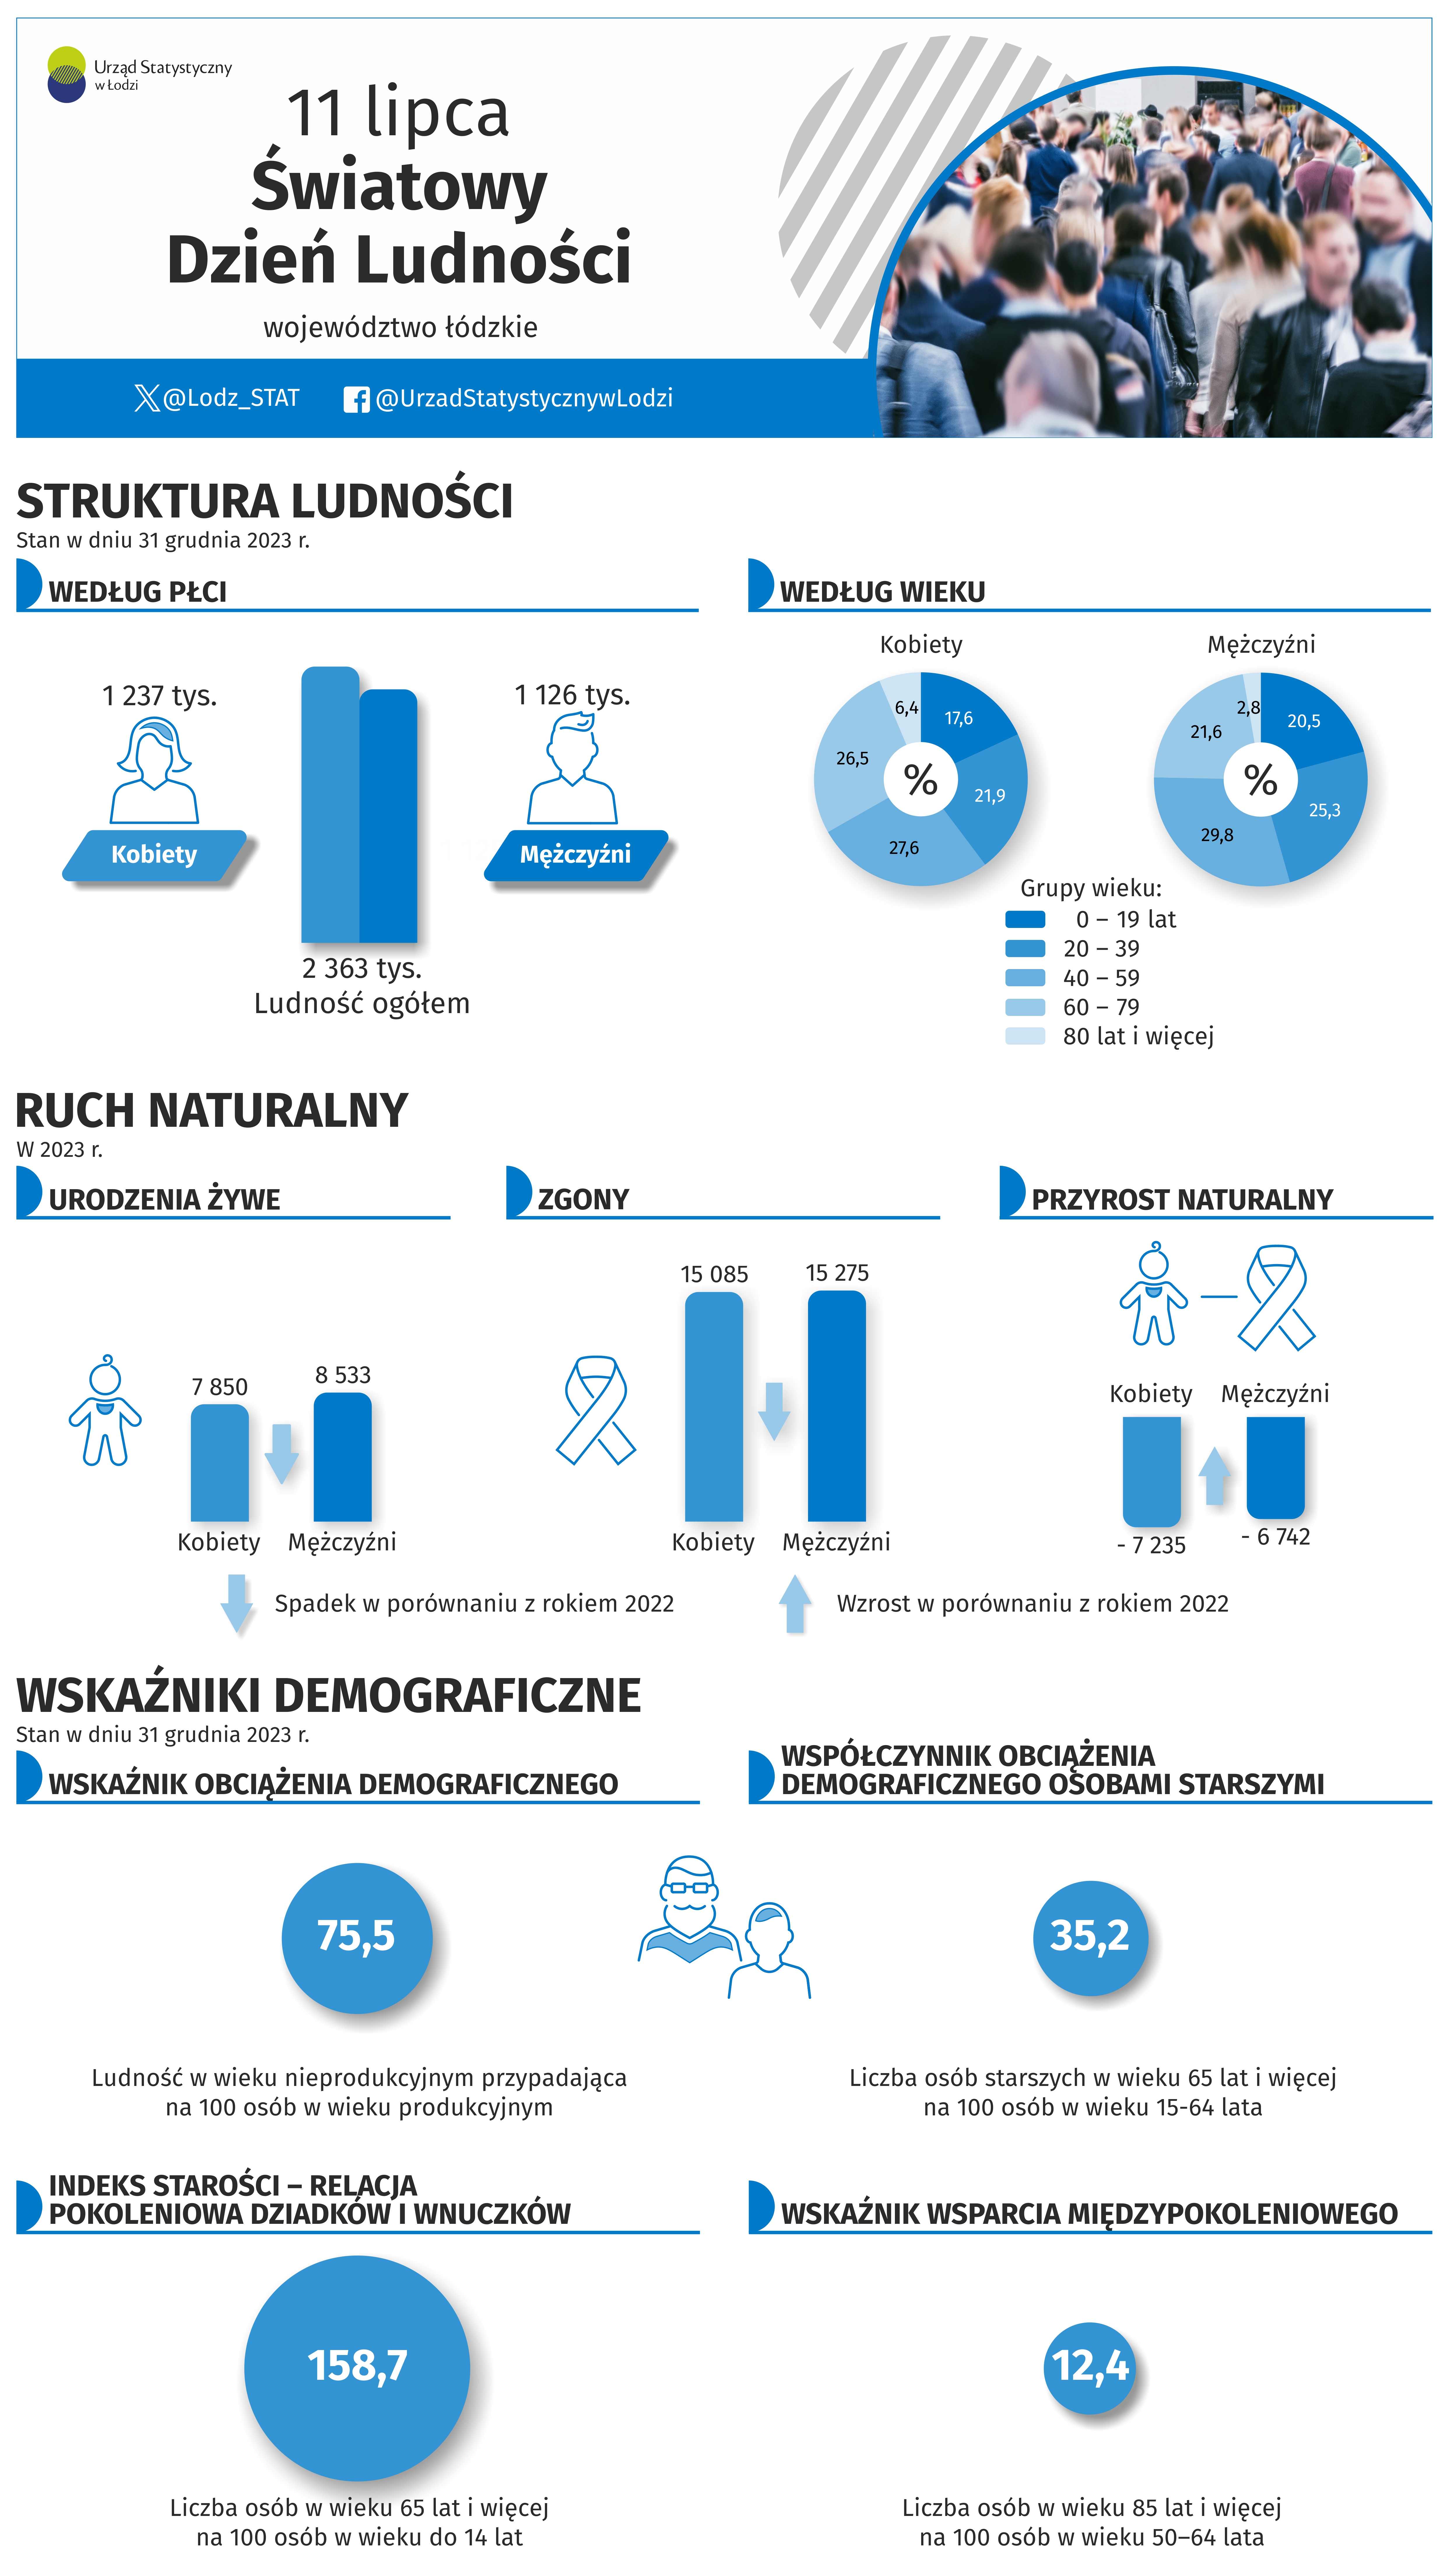 Infografika z okazji Święta Dnia Ludności przedstawiająca dane za rok 2023 w województwie łódzkim.